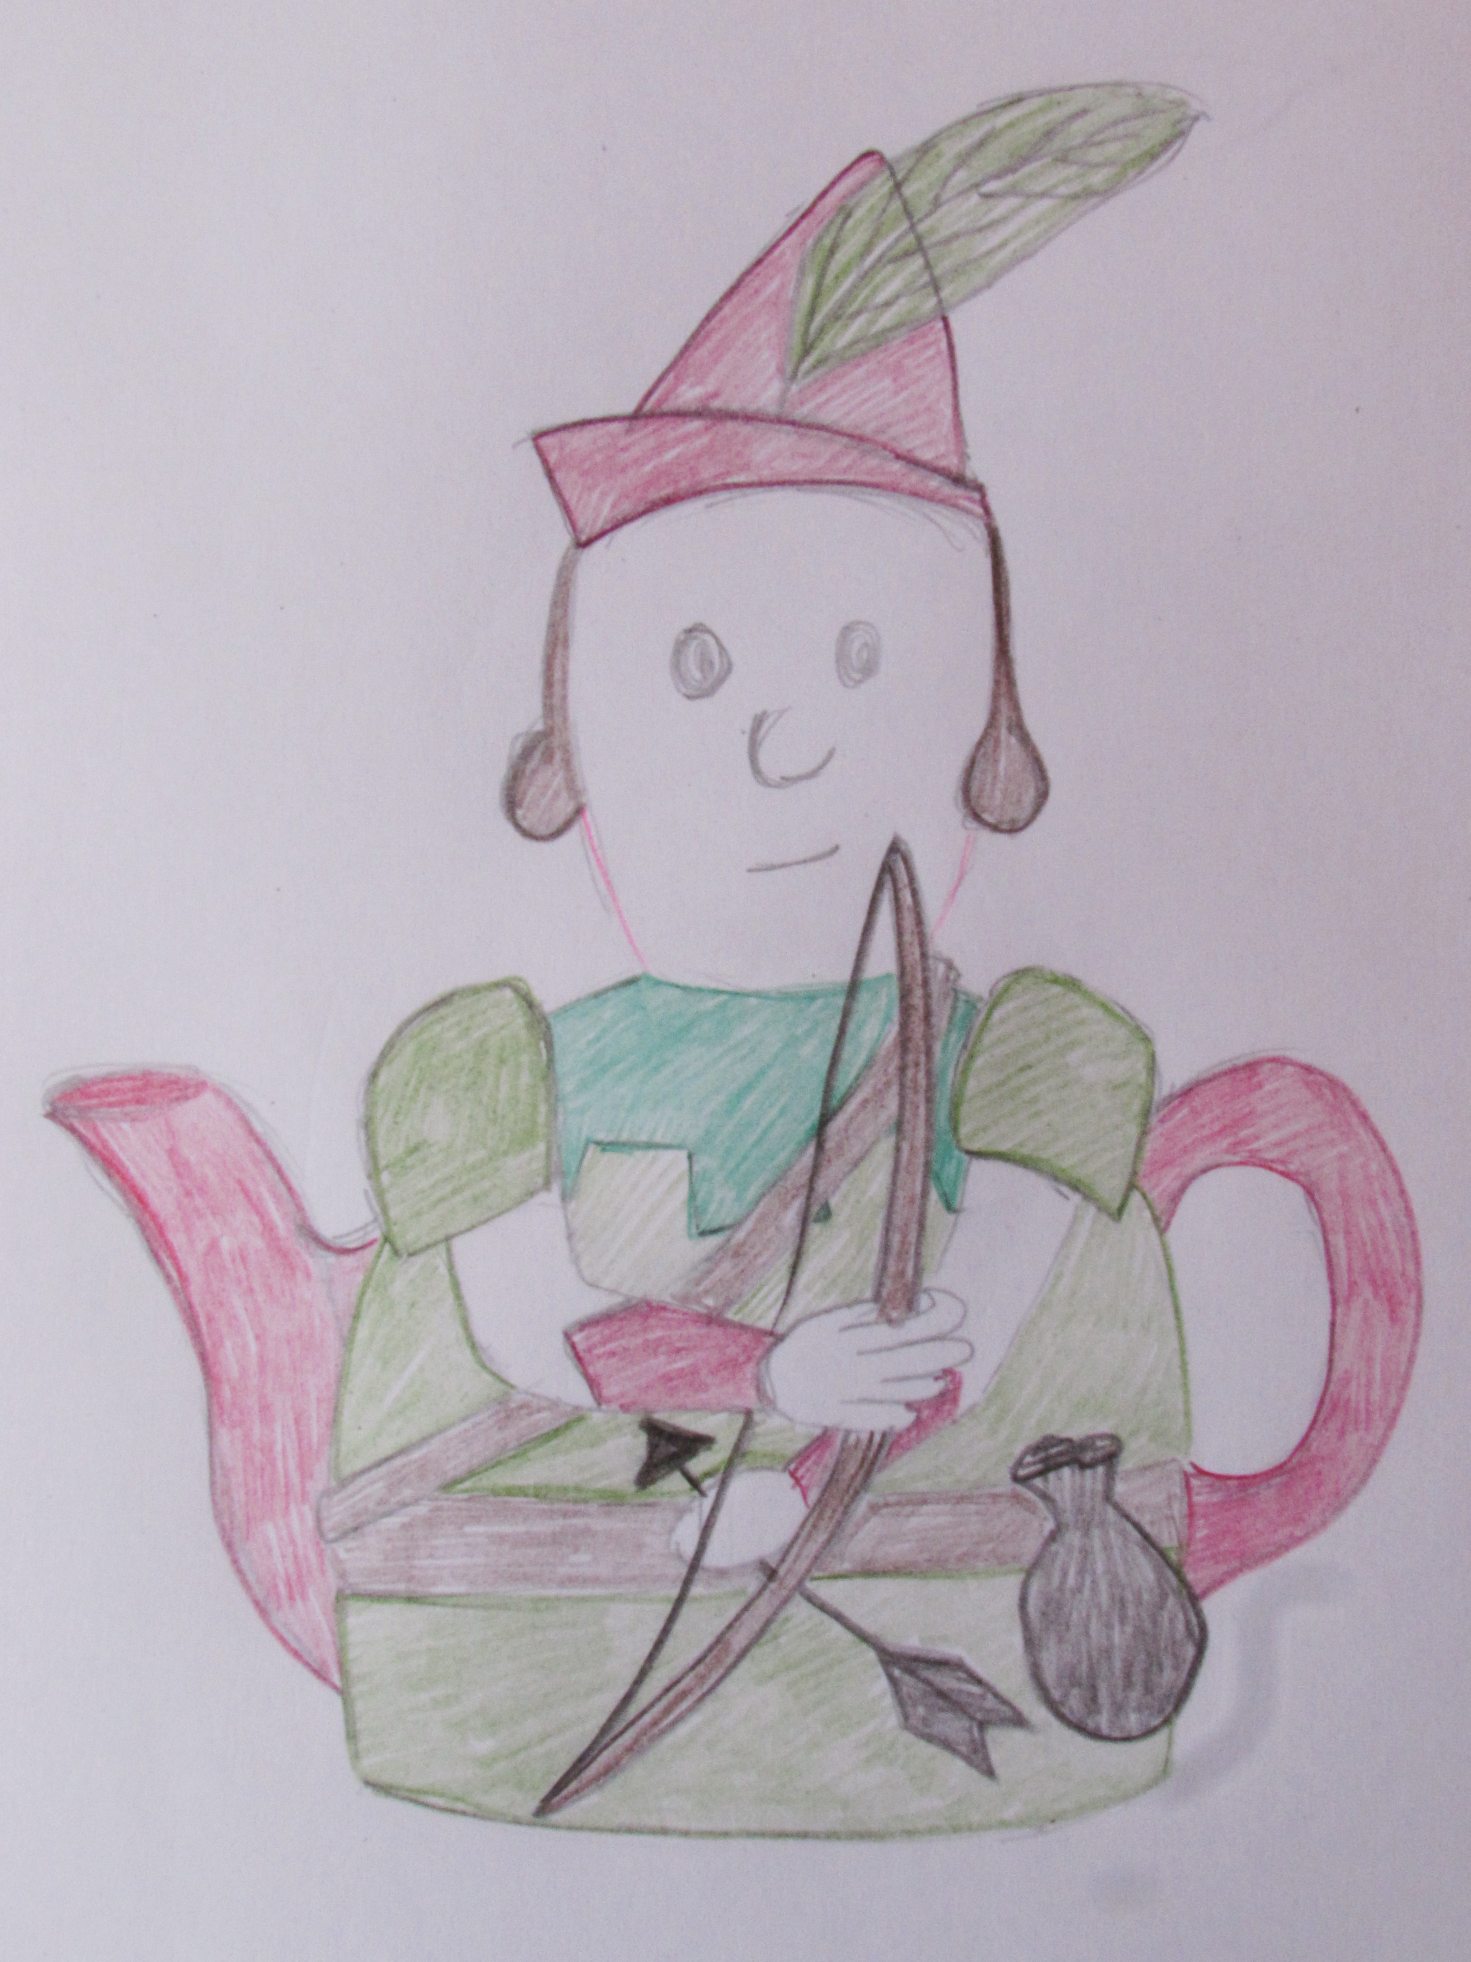 Robin Hood Tea Cosy